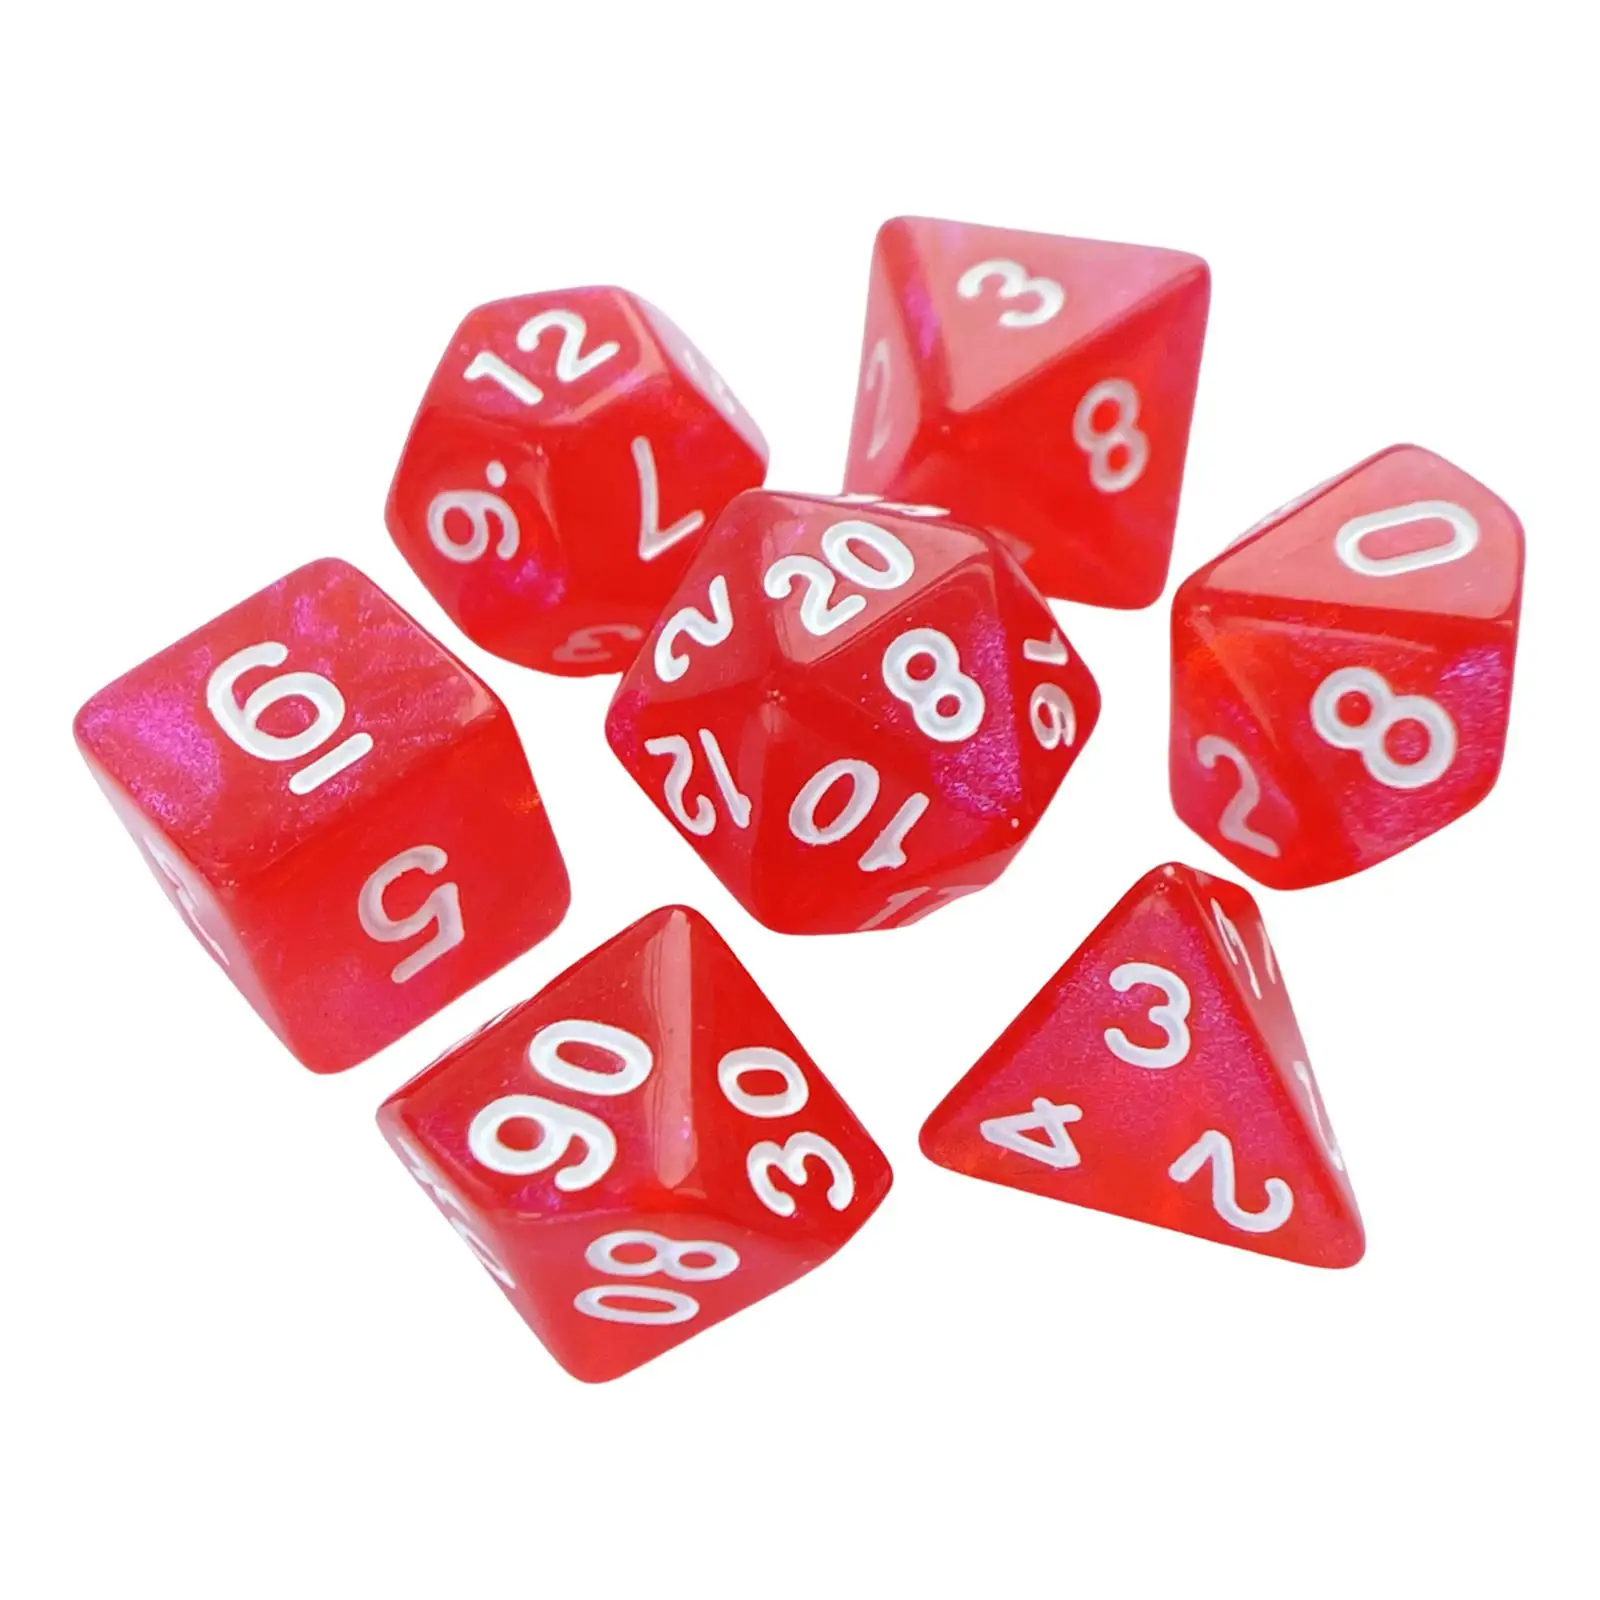 7x Polyhedron Dices, Party Favors, D4 D8 D10 D6 D12 D20, Role Playing Game